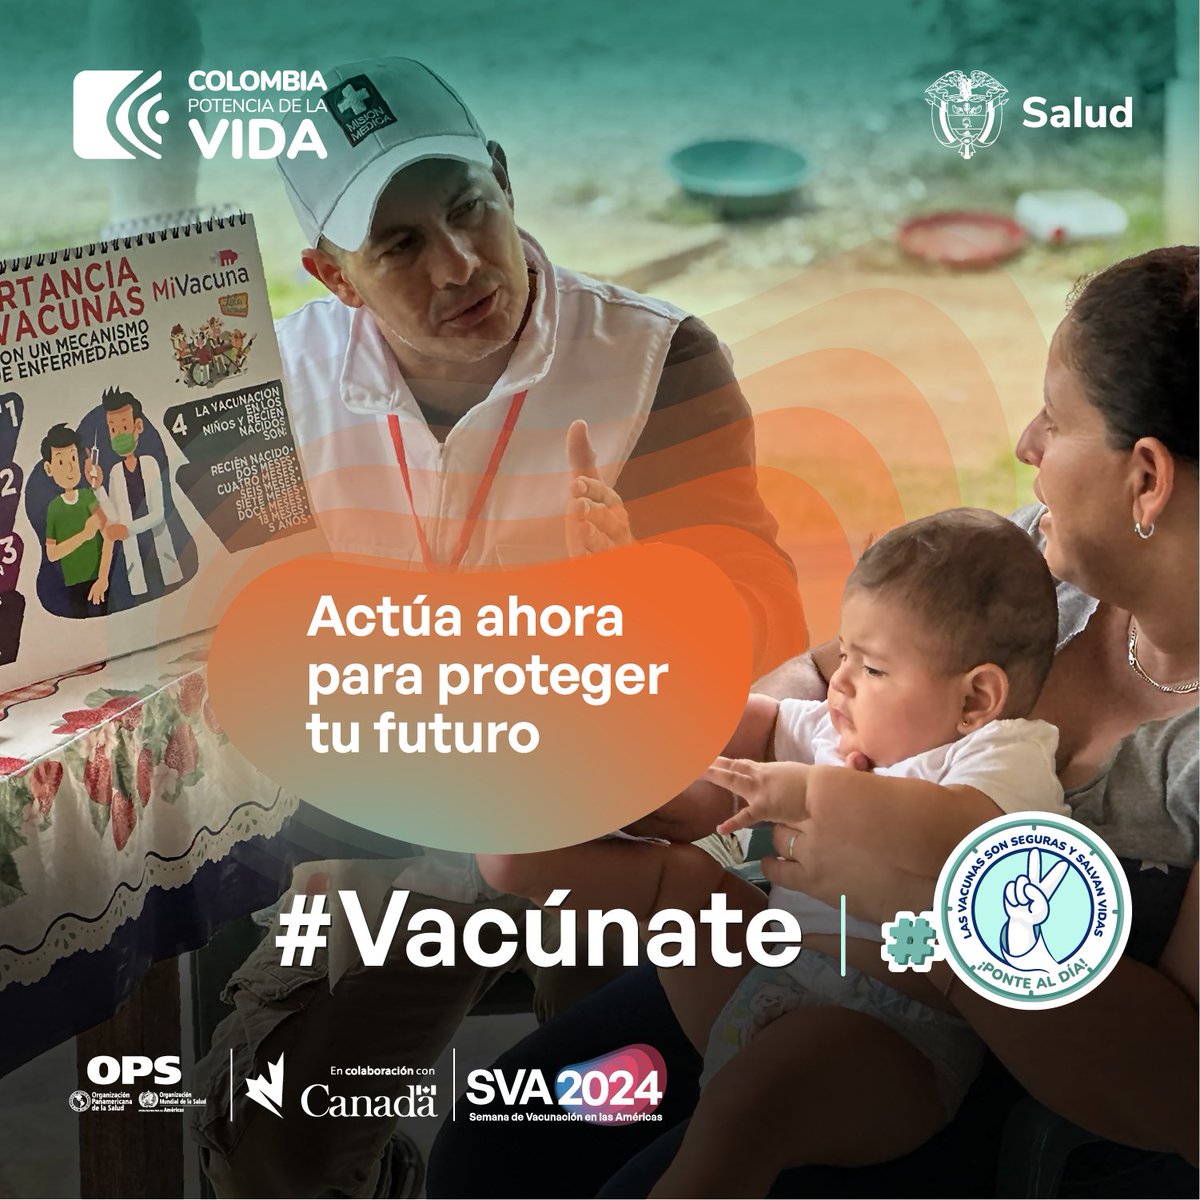 El próximo 20 de abril inicia la 22° semana de #Vacunación de las Américas y la 13° semana de la #Inmunización. #Vacúnate en cualquier punto de vacunación, en el país hay más de 3000. 
Las vacunas son seguras y salvan vidas.

#JornadaDeVacunación #VacunasSalvanVidas